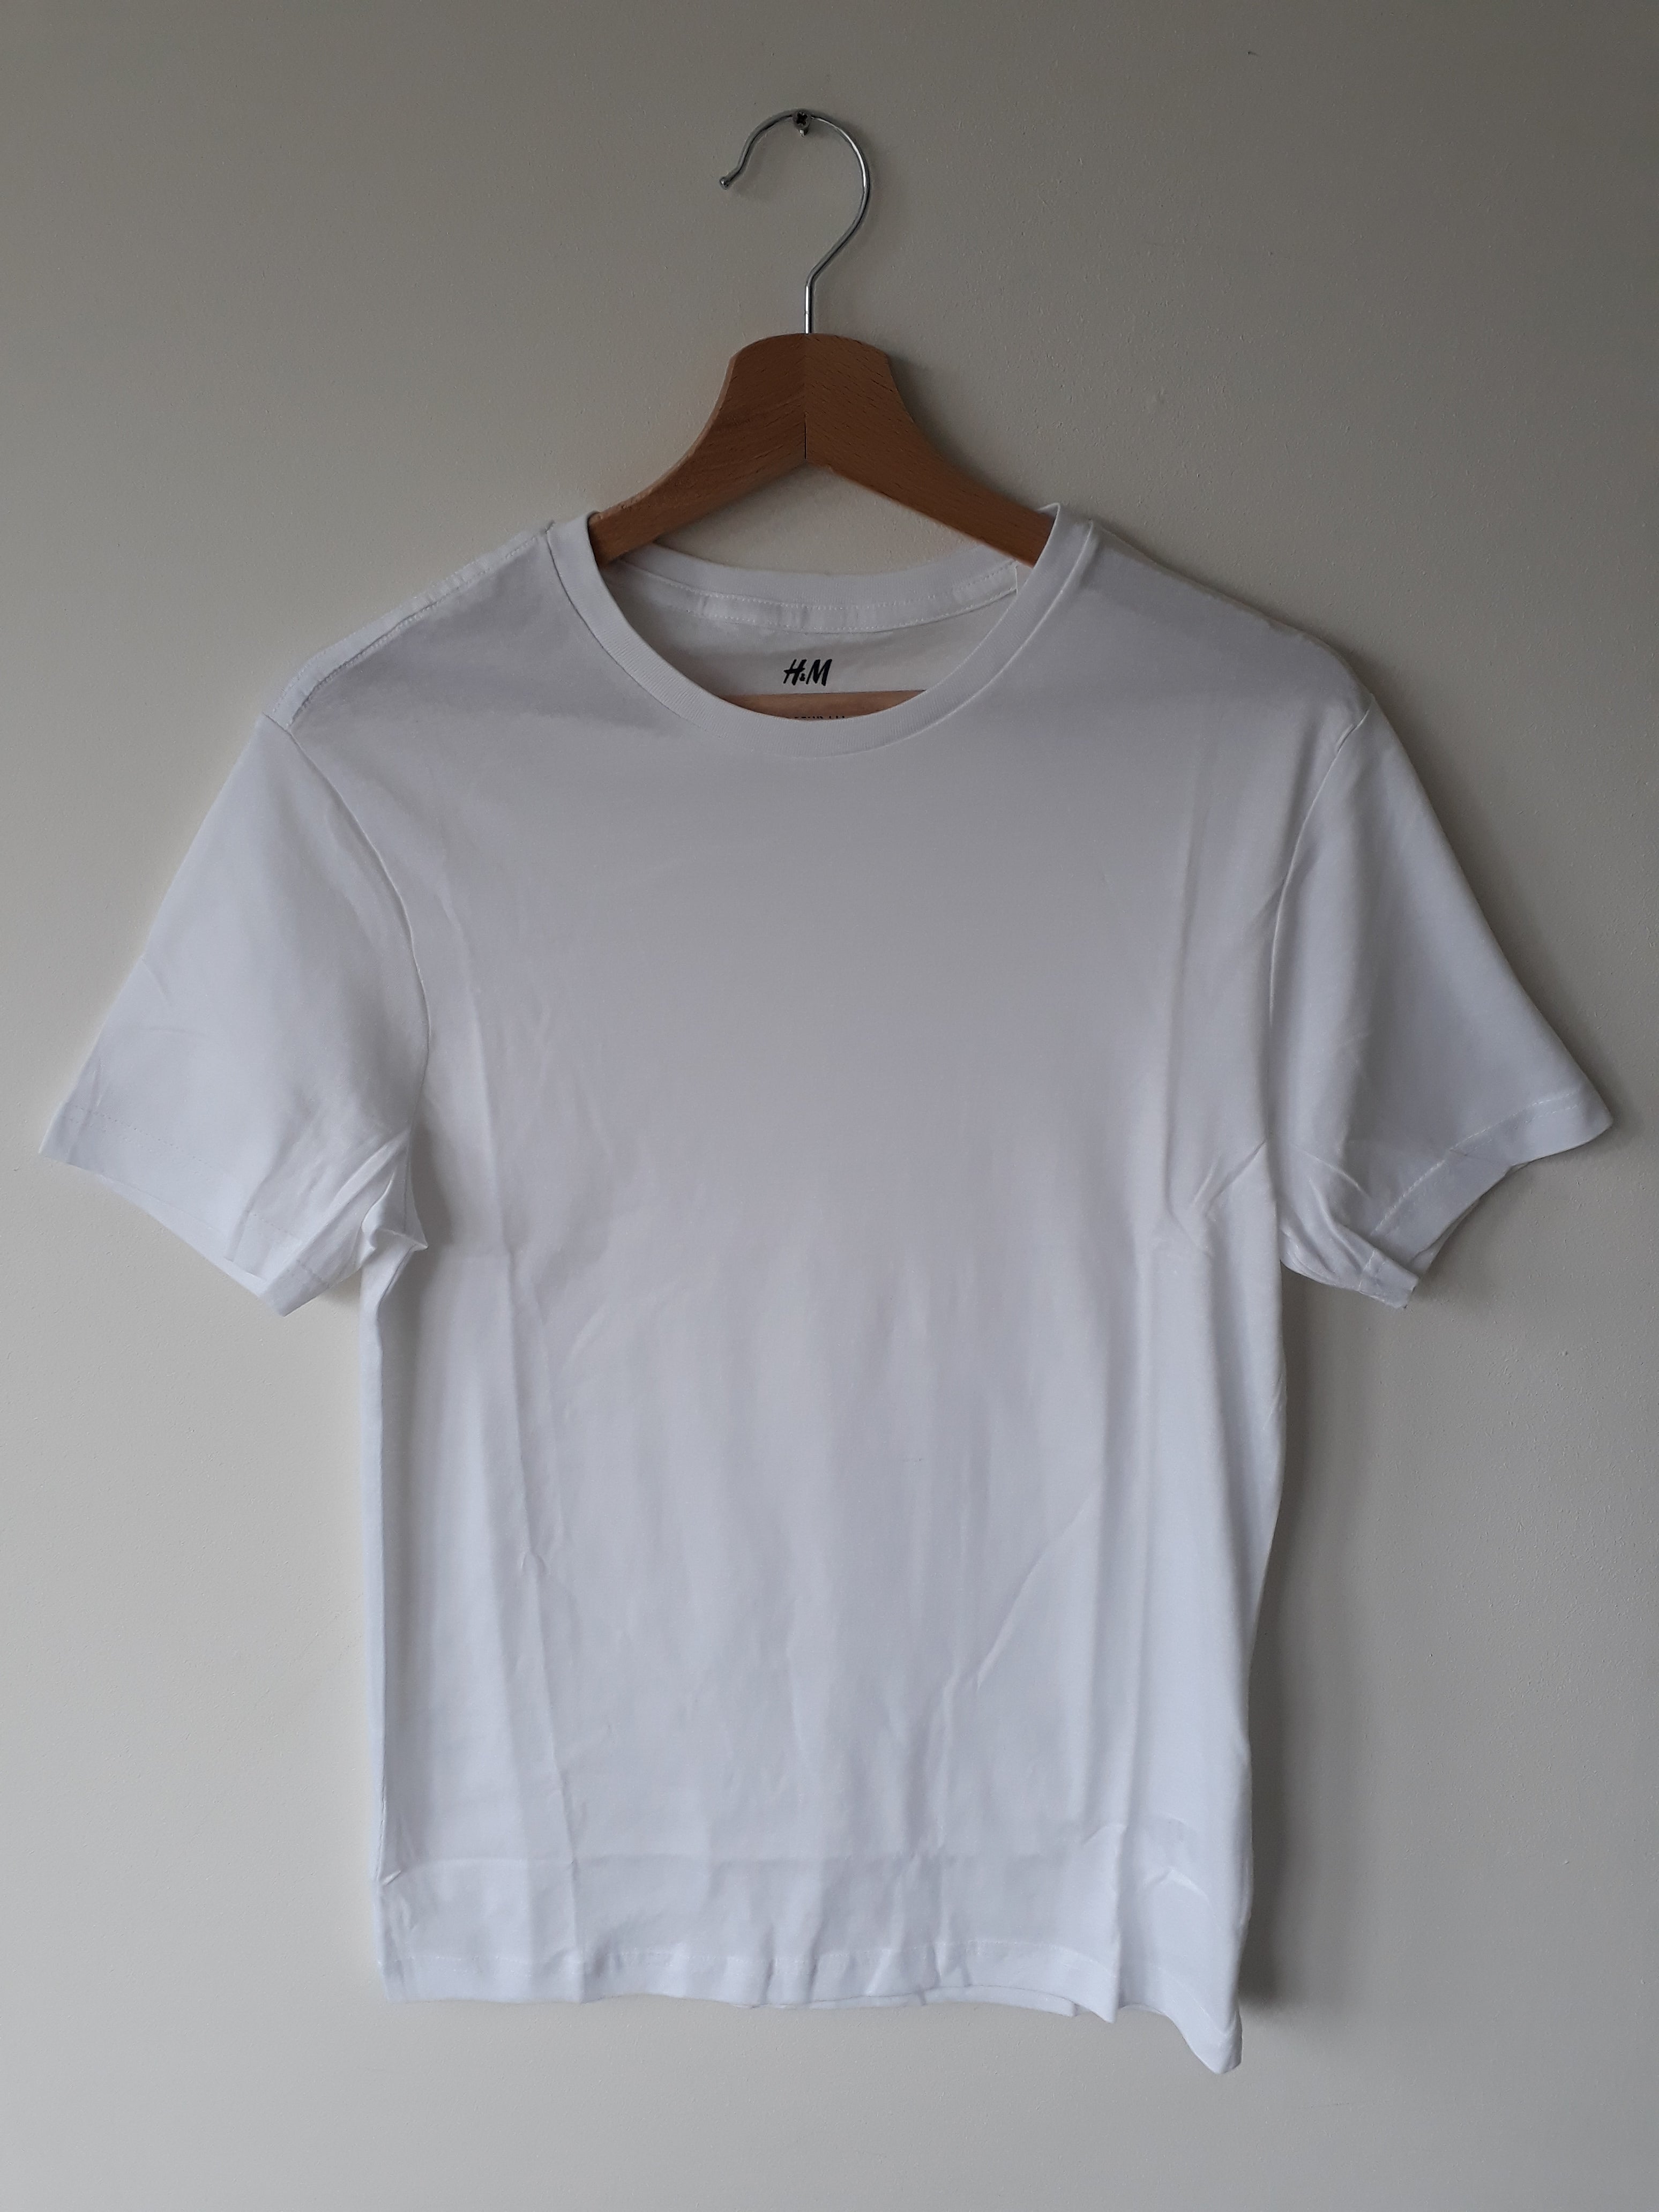 T-shirt wit heren maten XS t/m XXL - 2dehands nieuw